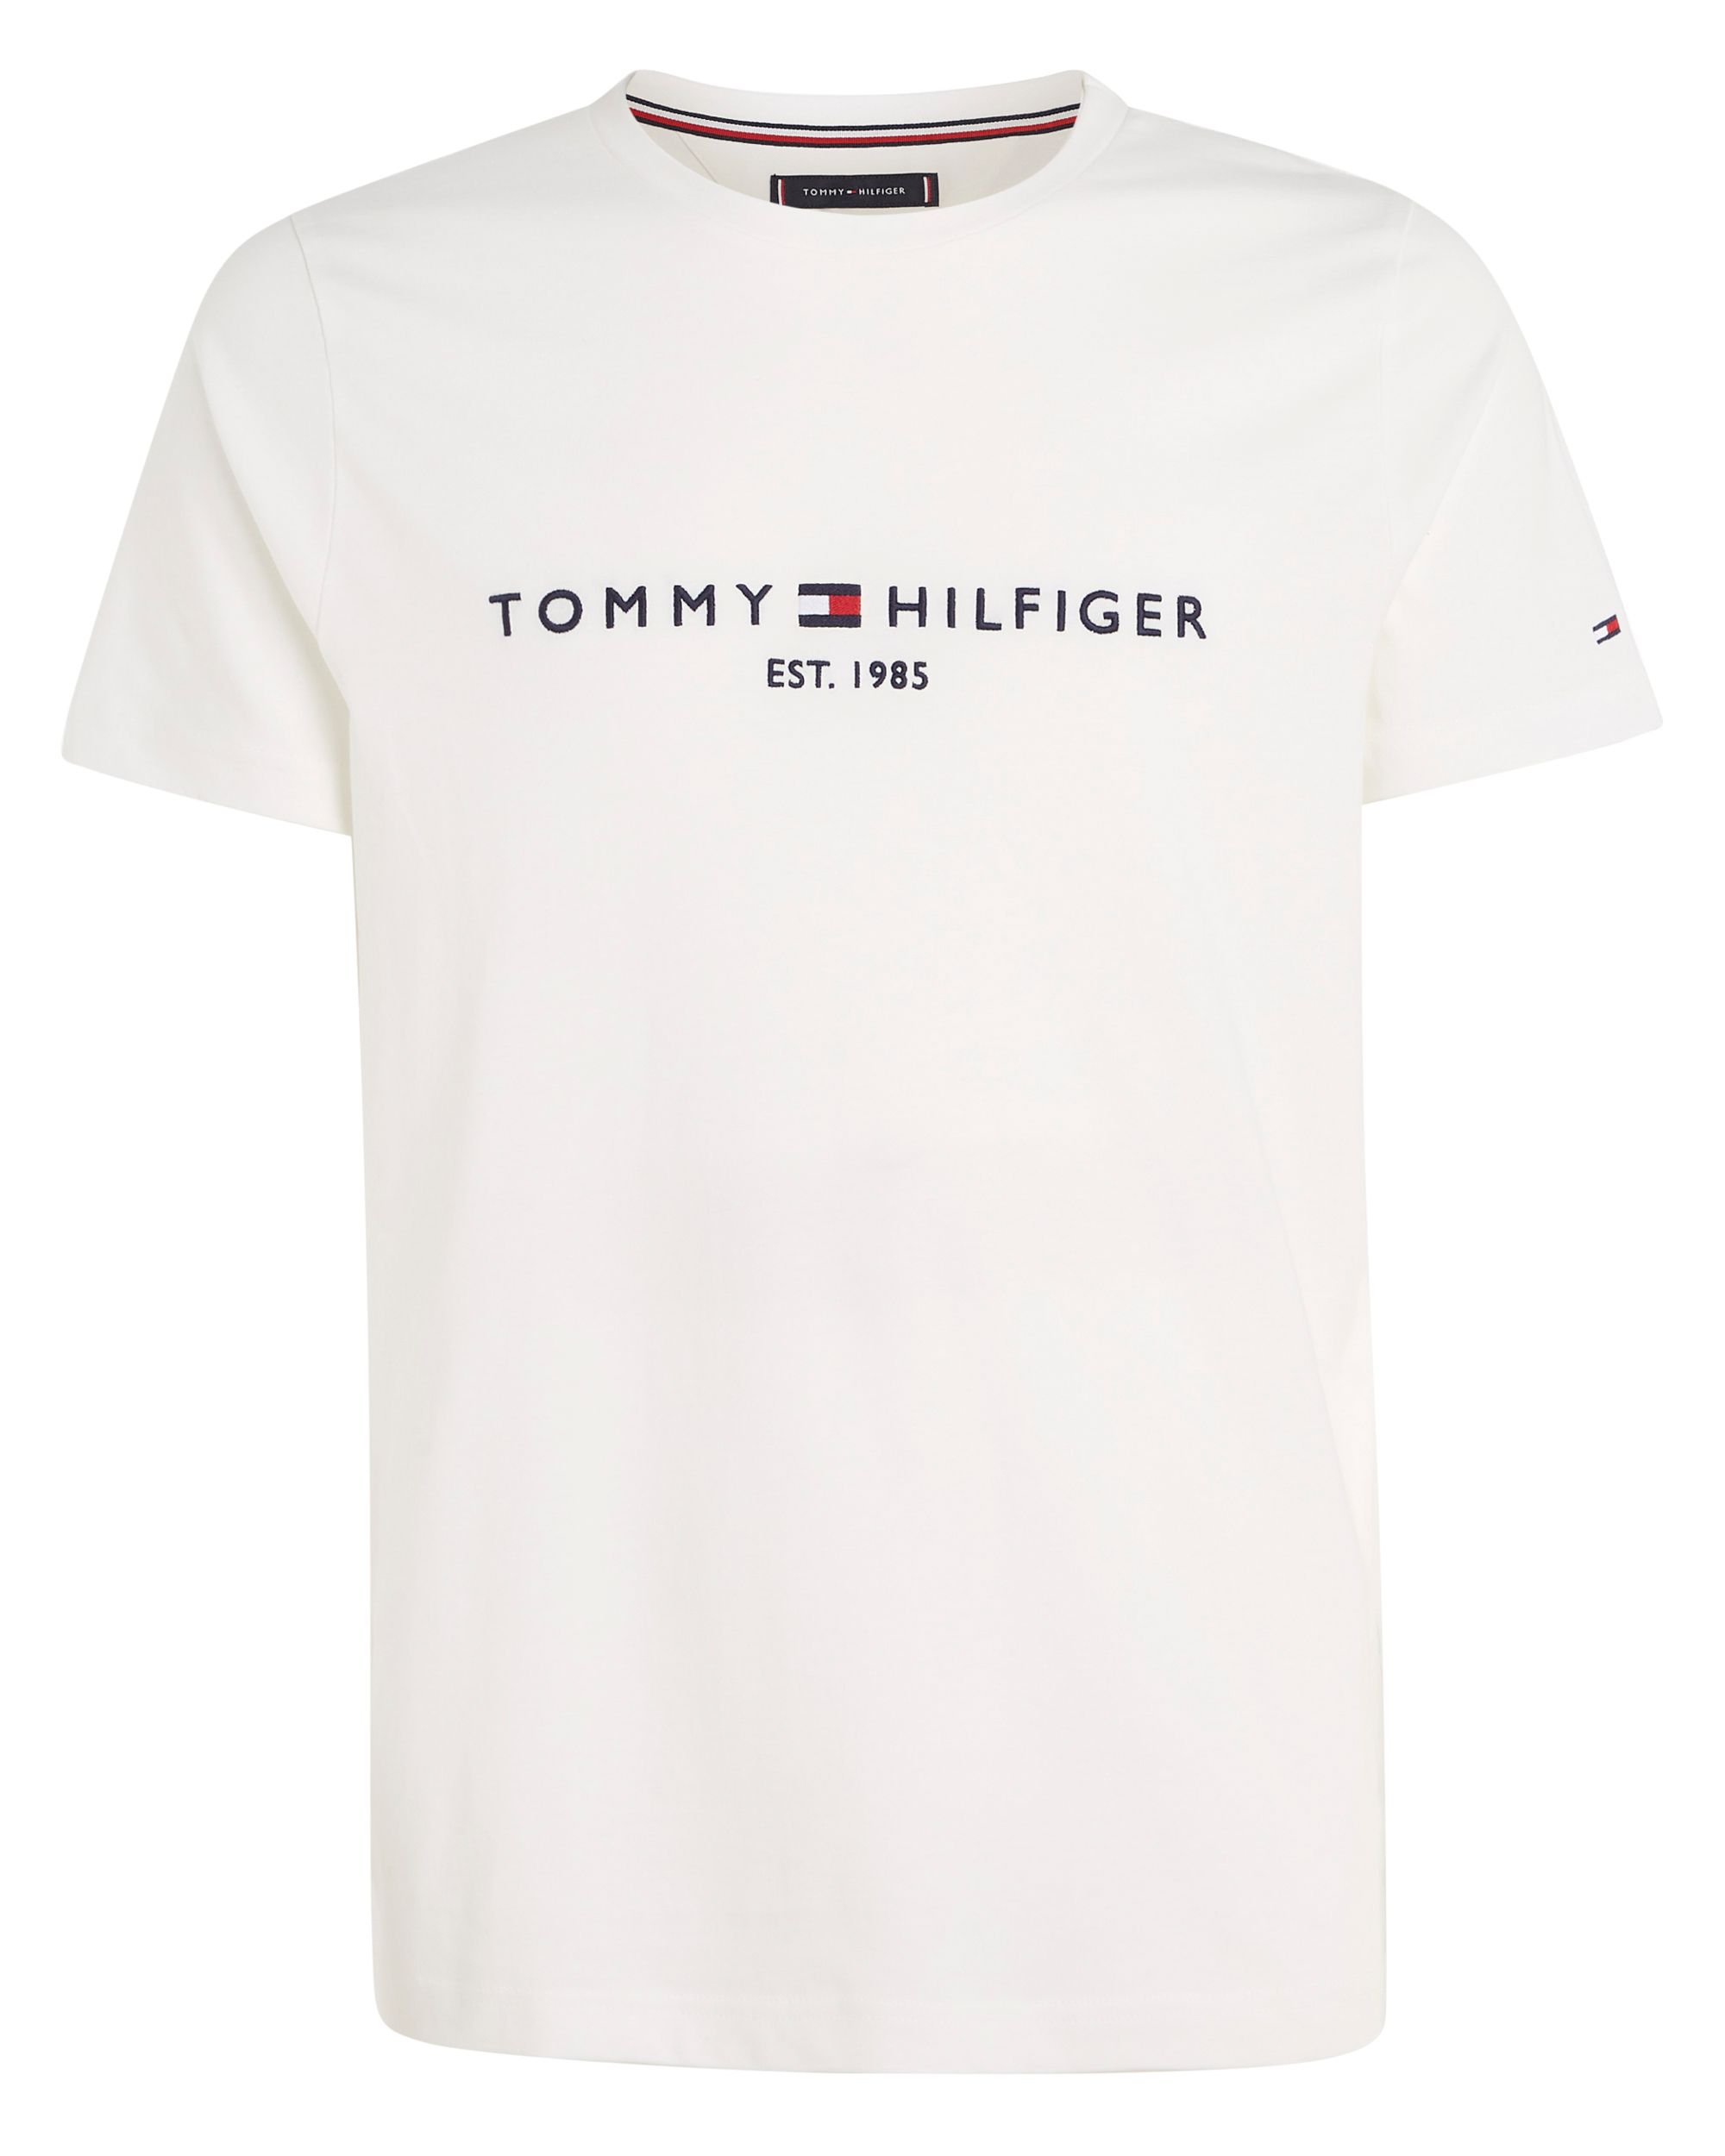 Tommy Hilfiger Menswear T-shirt KM Wit 086990-001-L